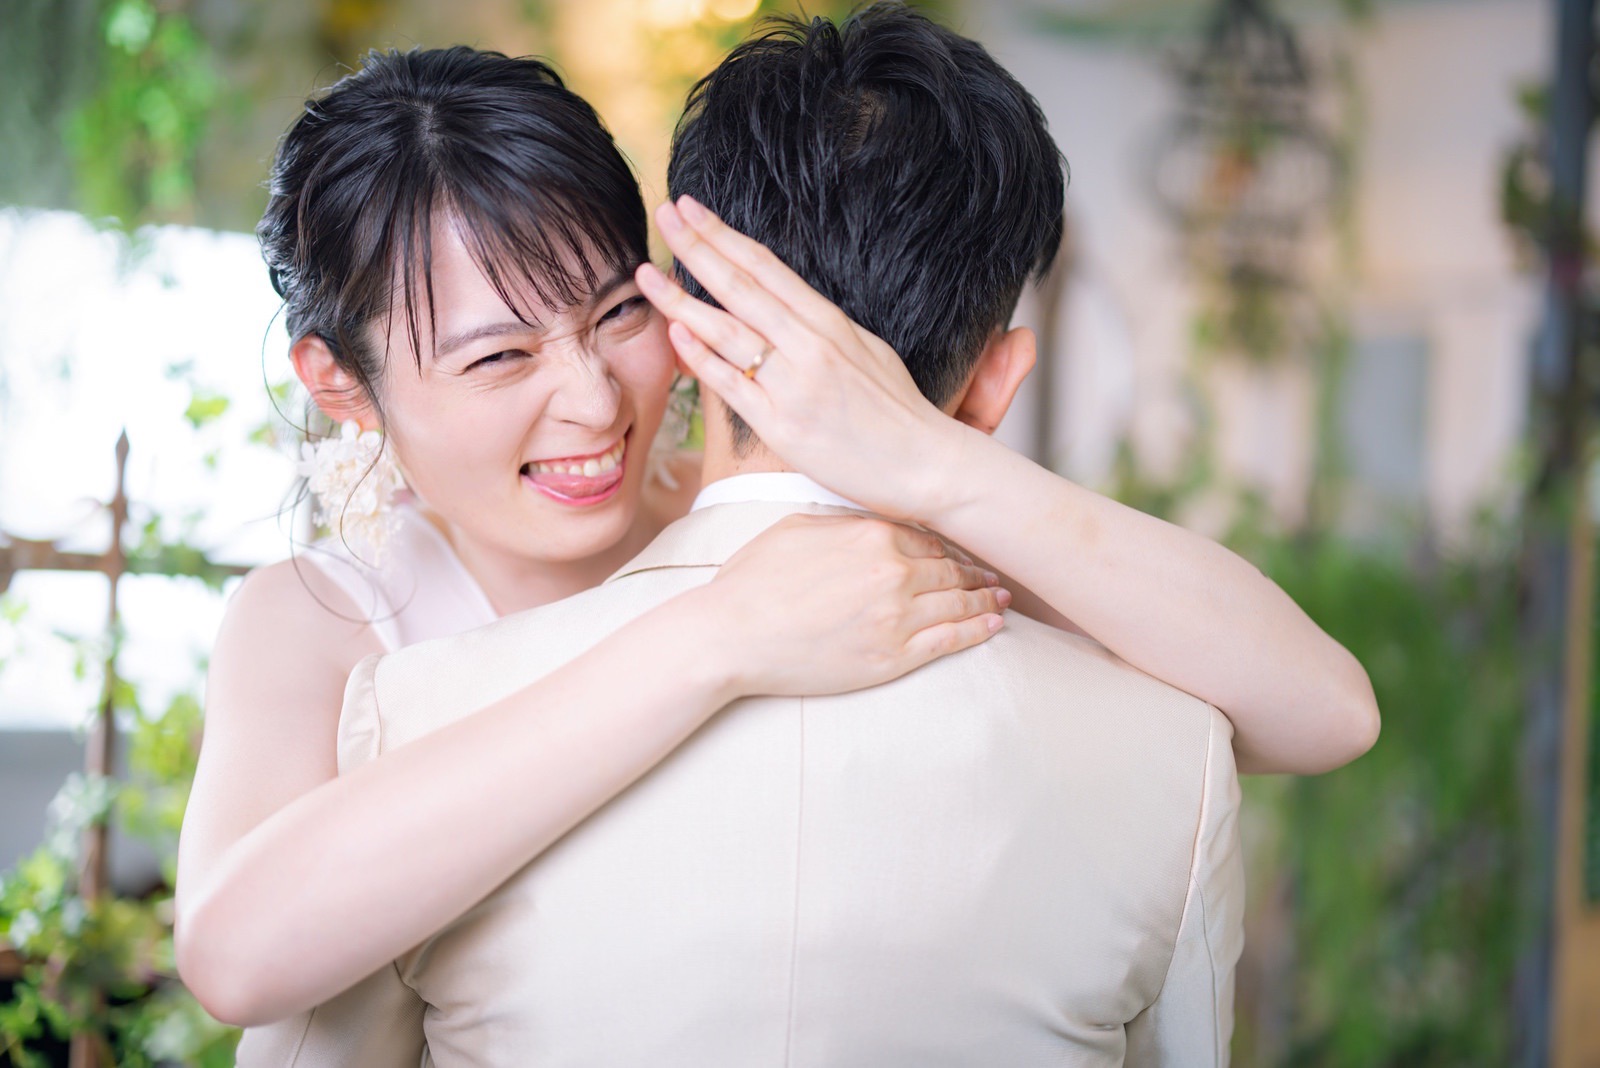 Takebe Marriage Pakutaso Free Stock Photos 25